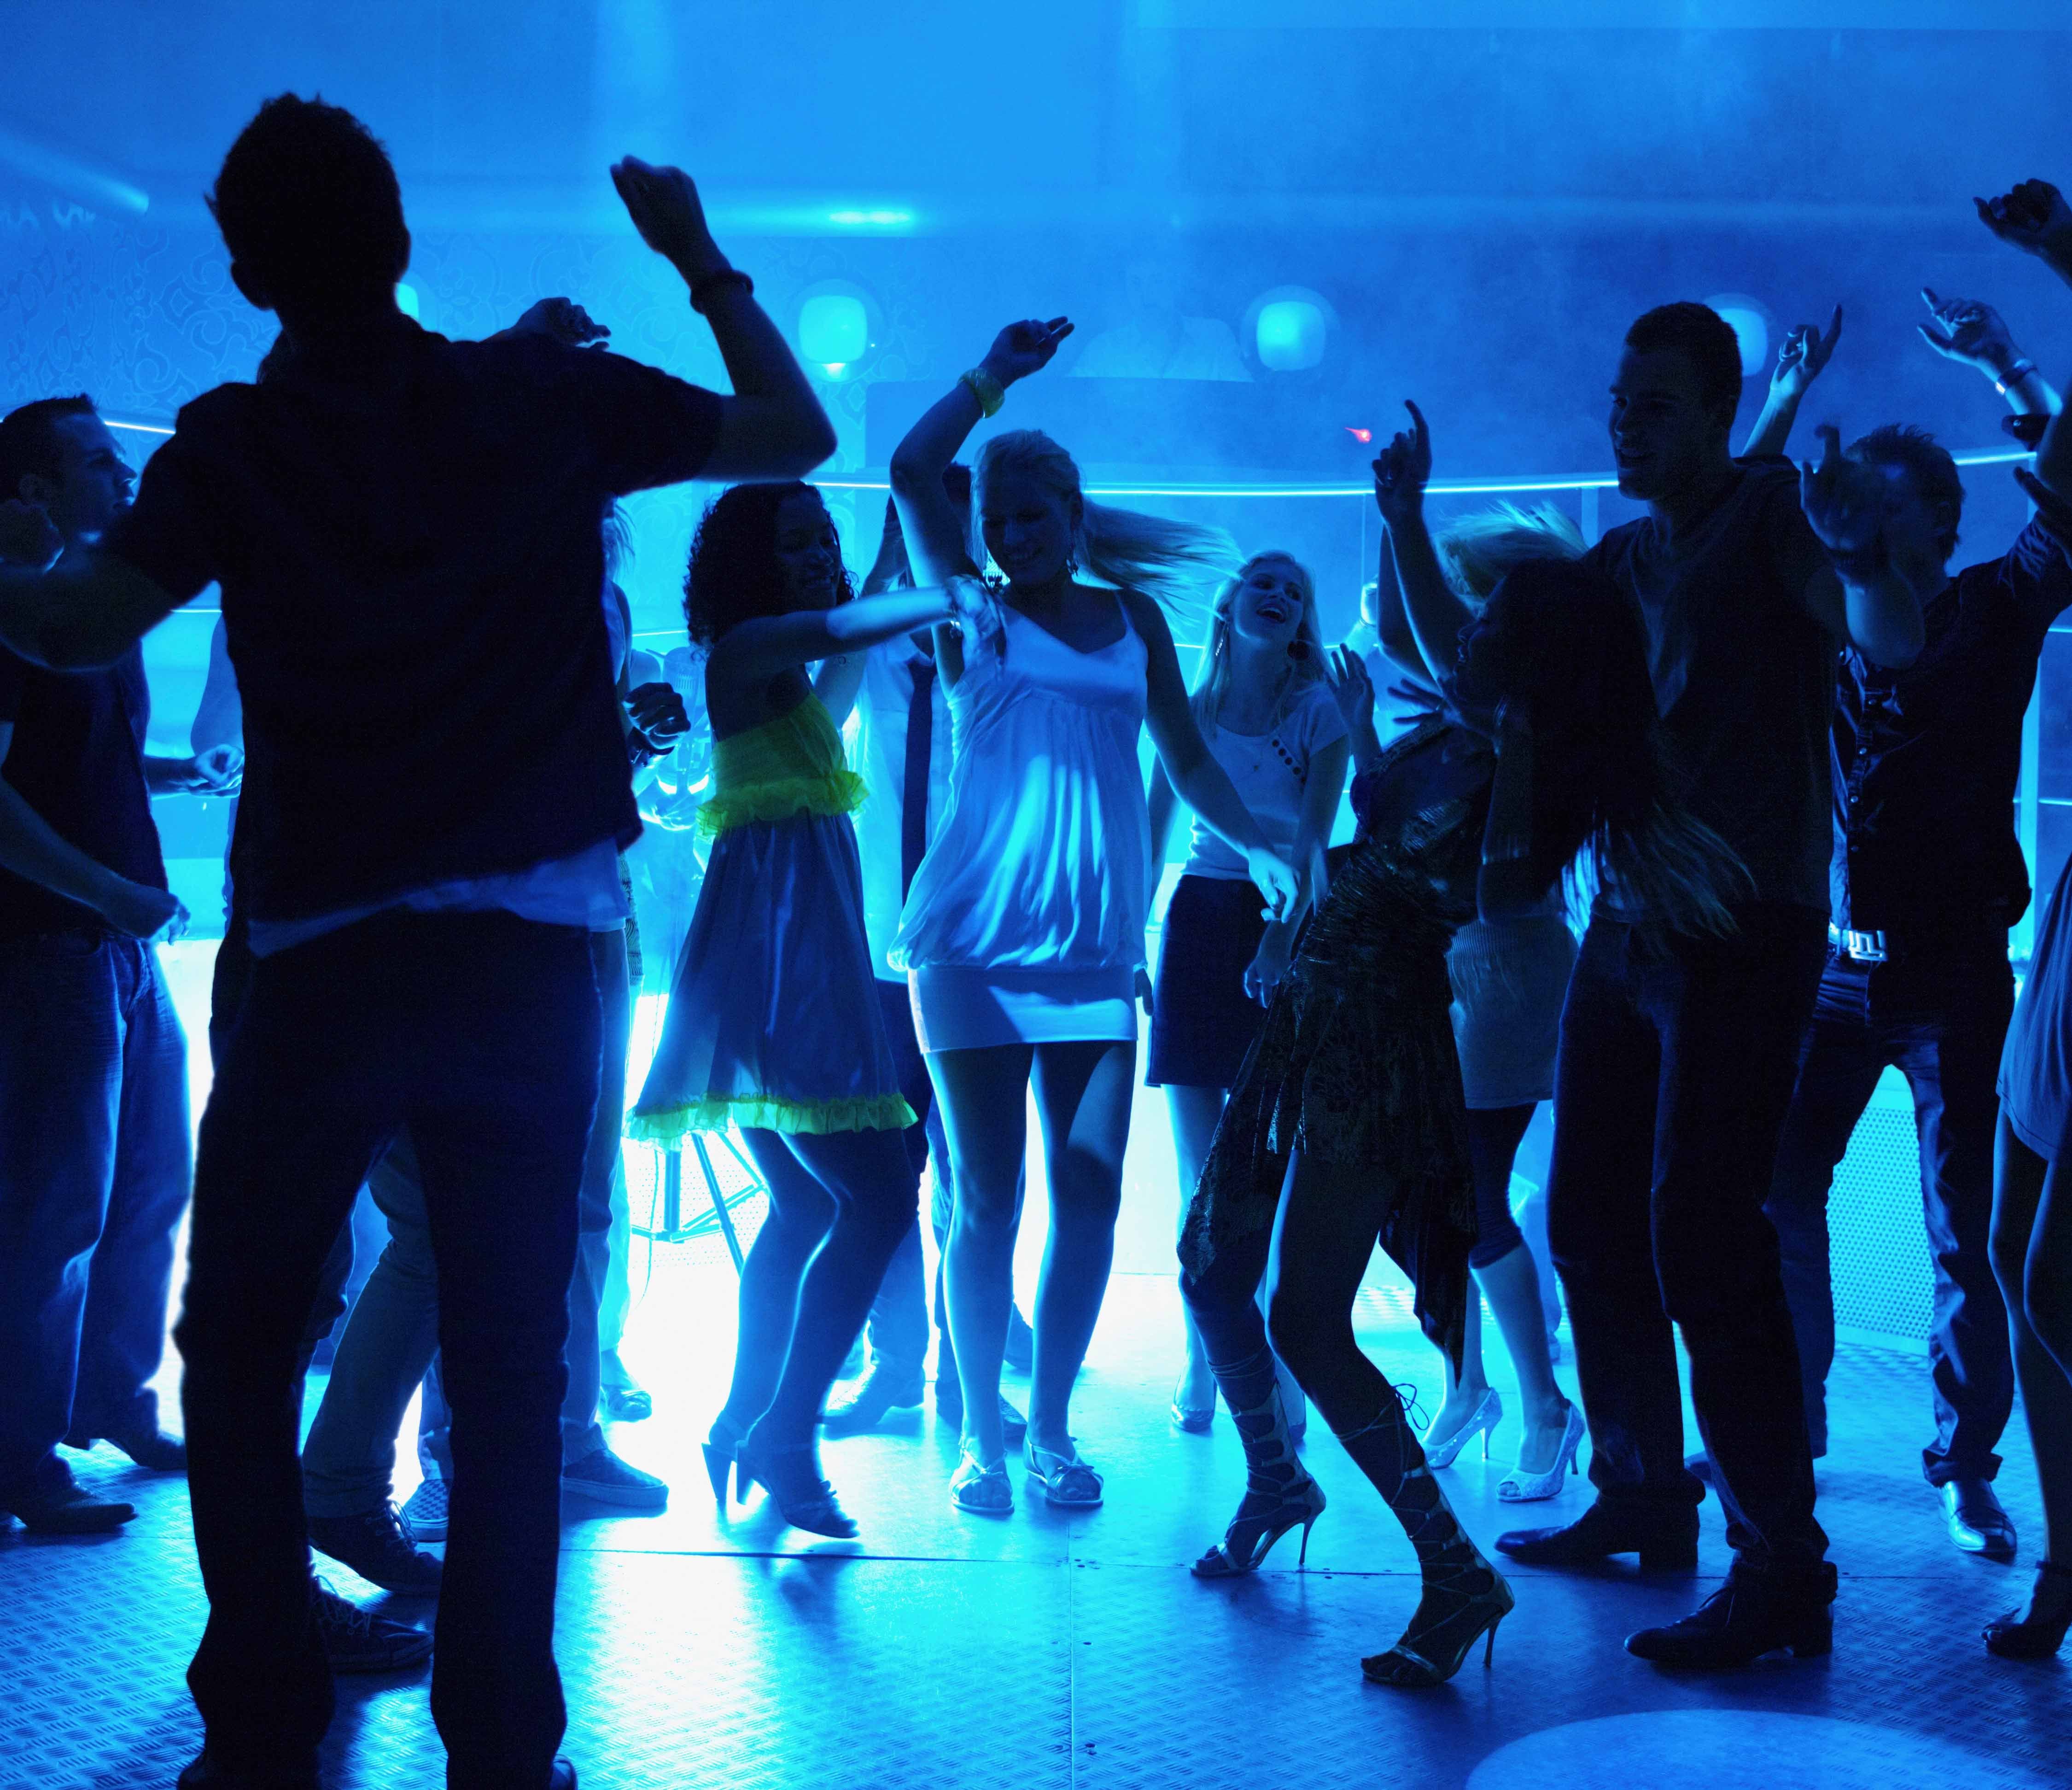 История ночного клуба. Ночная дискотека. Клубные танцы. Танцы в клубе. Люди танцуют на дискотеке.